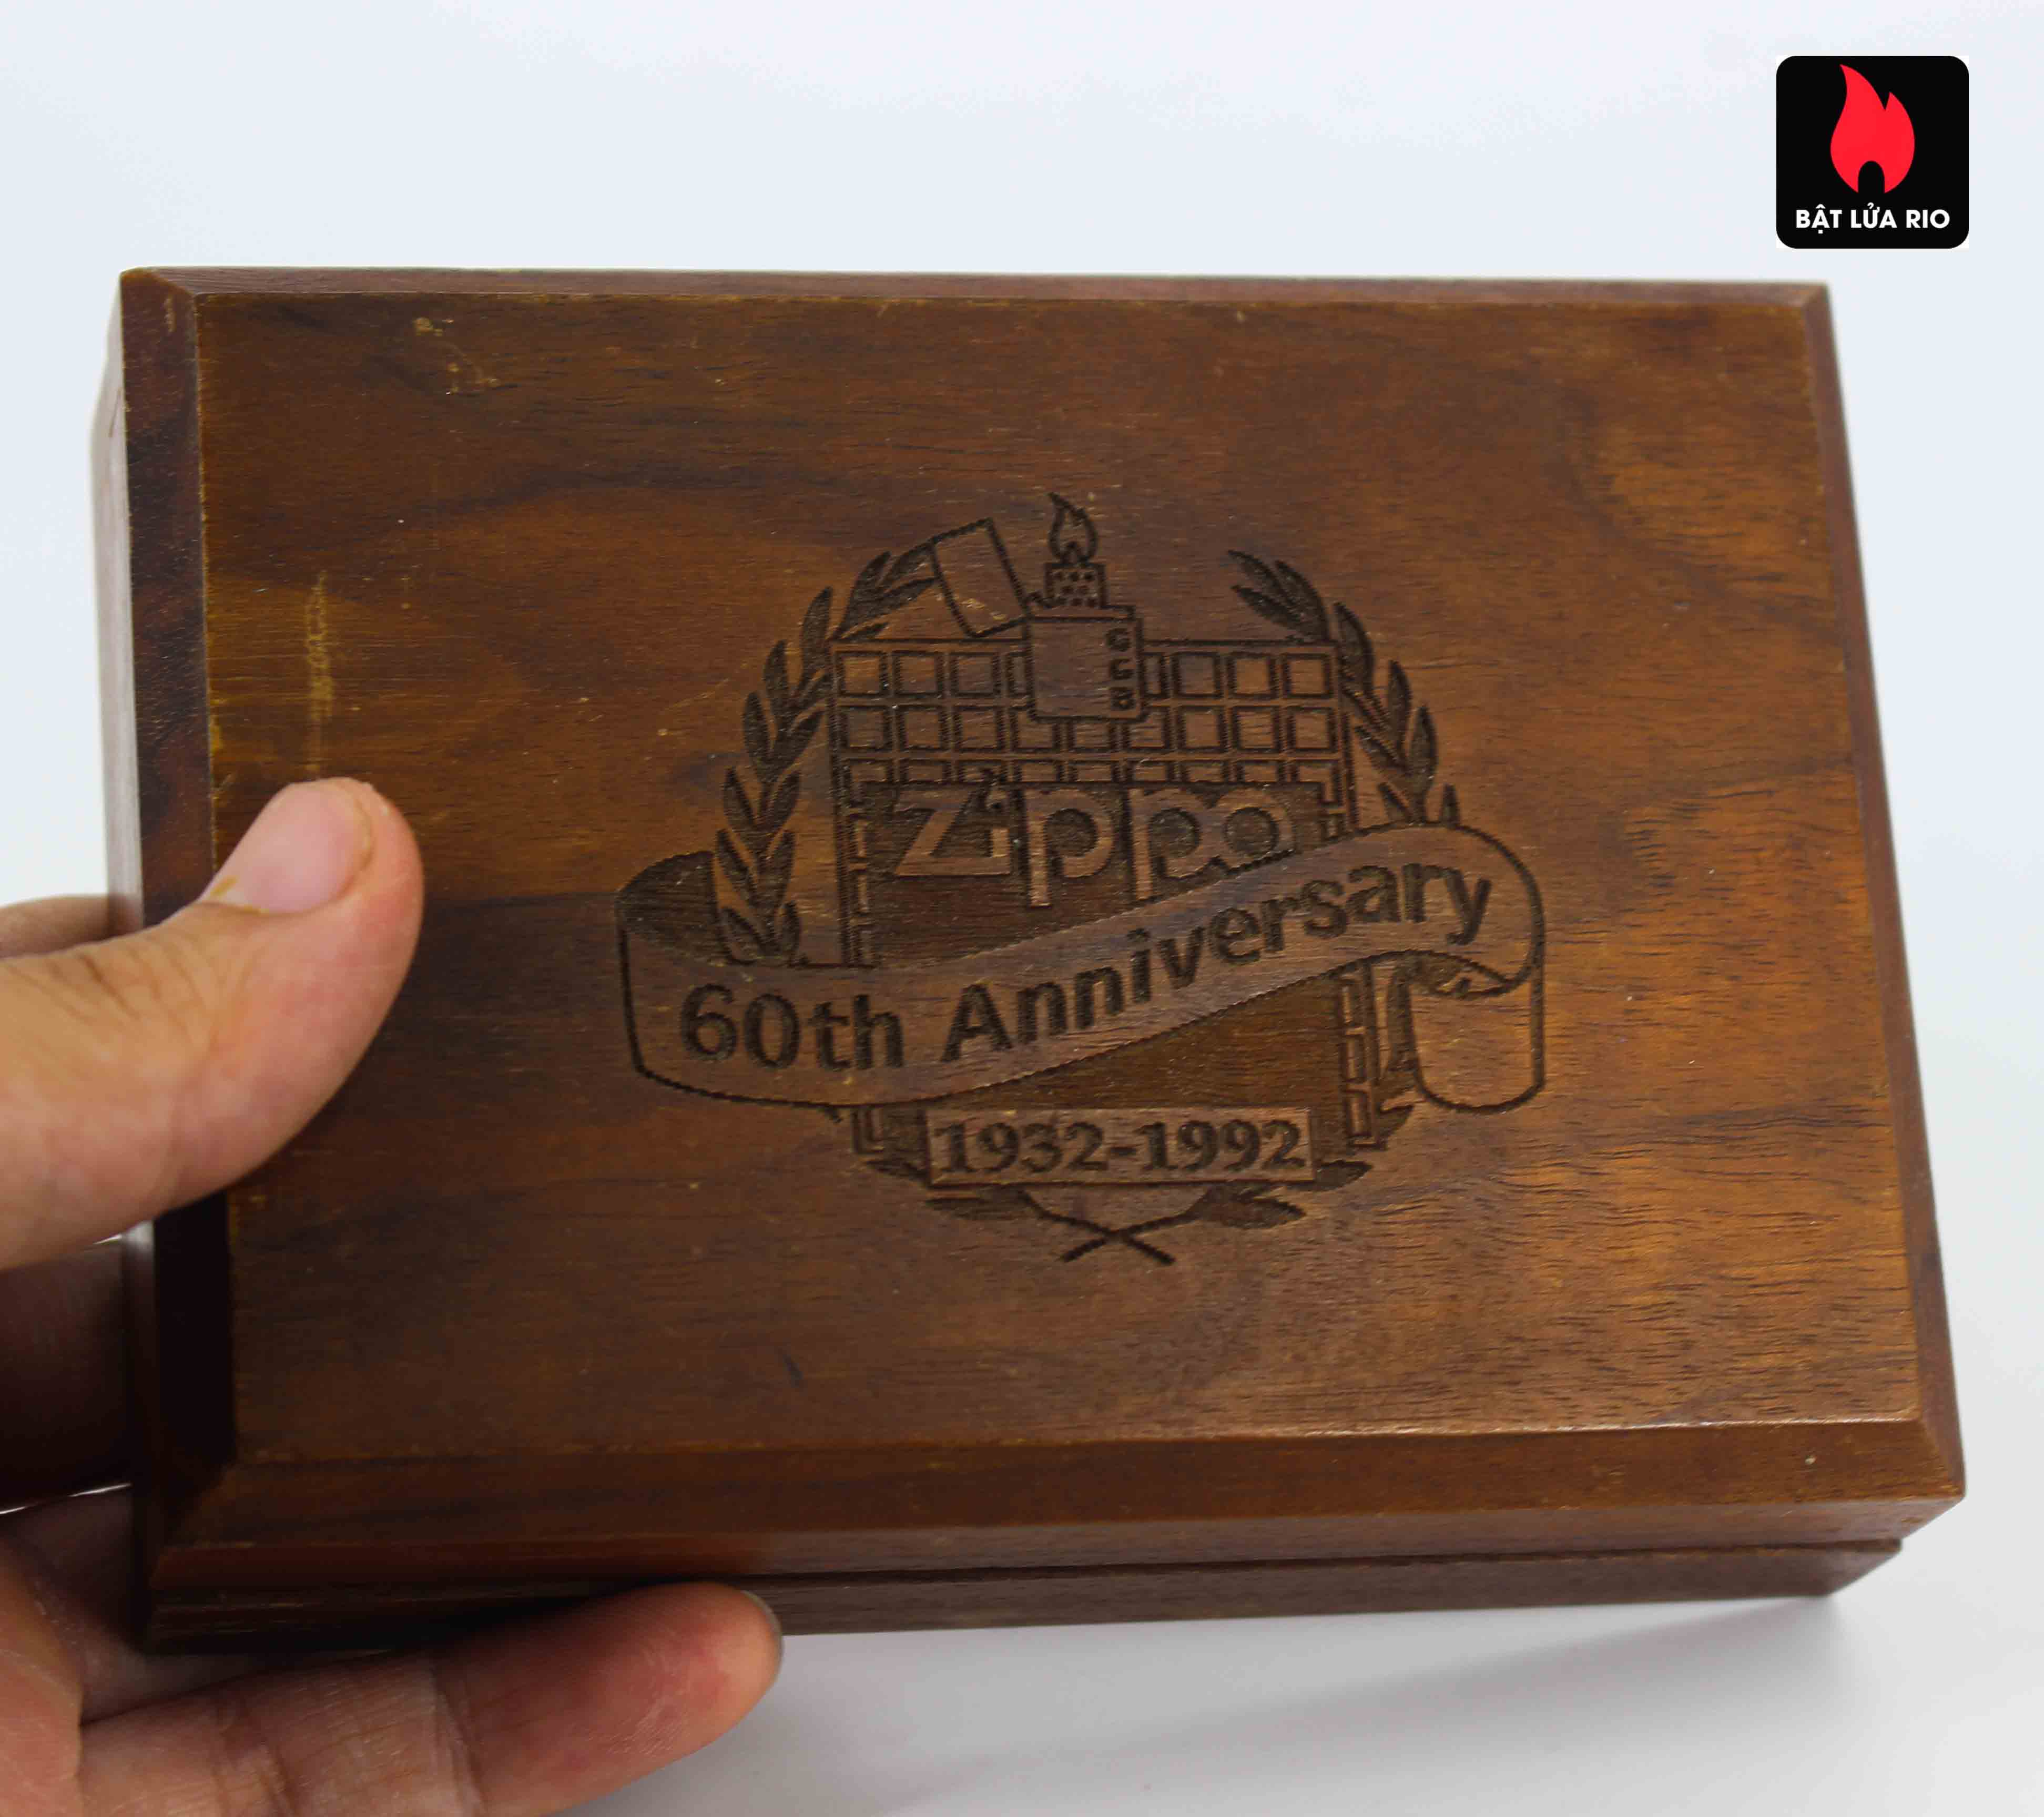 Bật Lửa Zippo 1932 - 1992 - 60th Anniversary - Kỉ Niệm 60 Năm Thành Lập  Hãng Zippo » ZippoShop